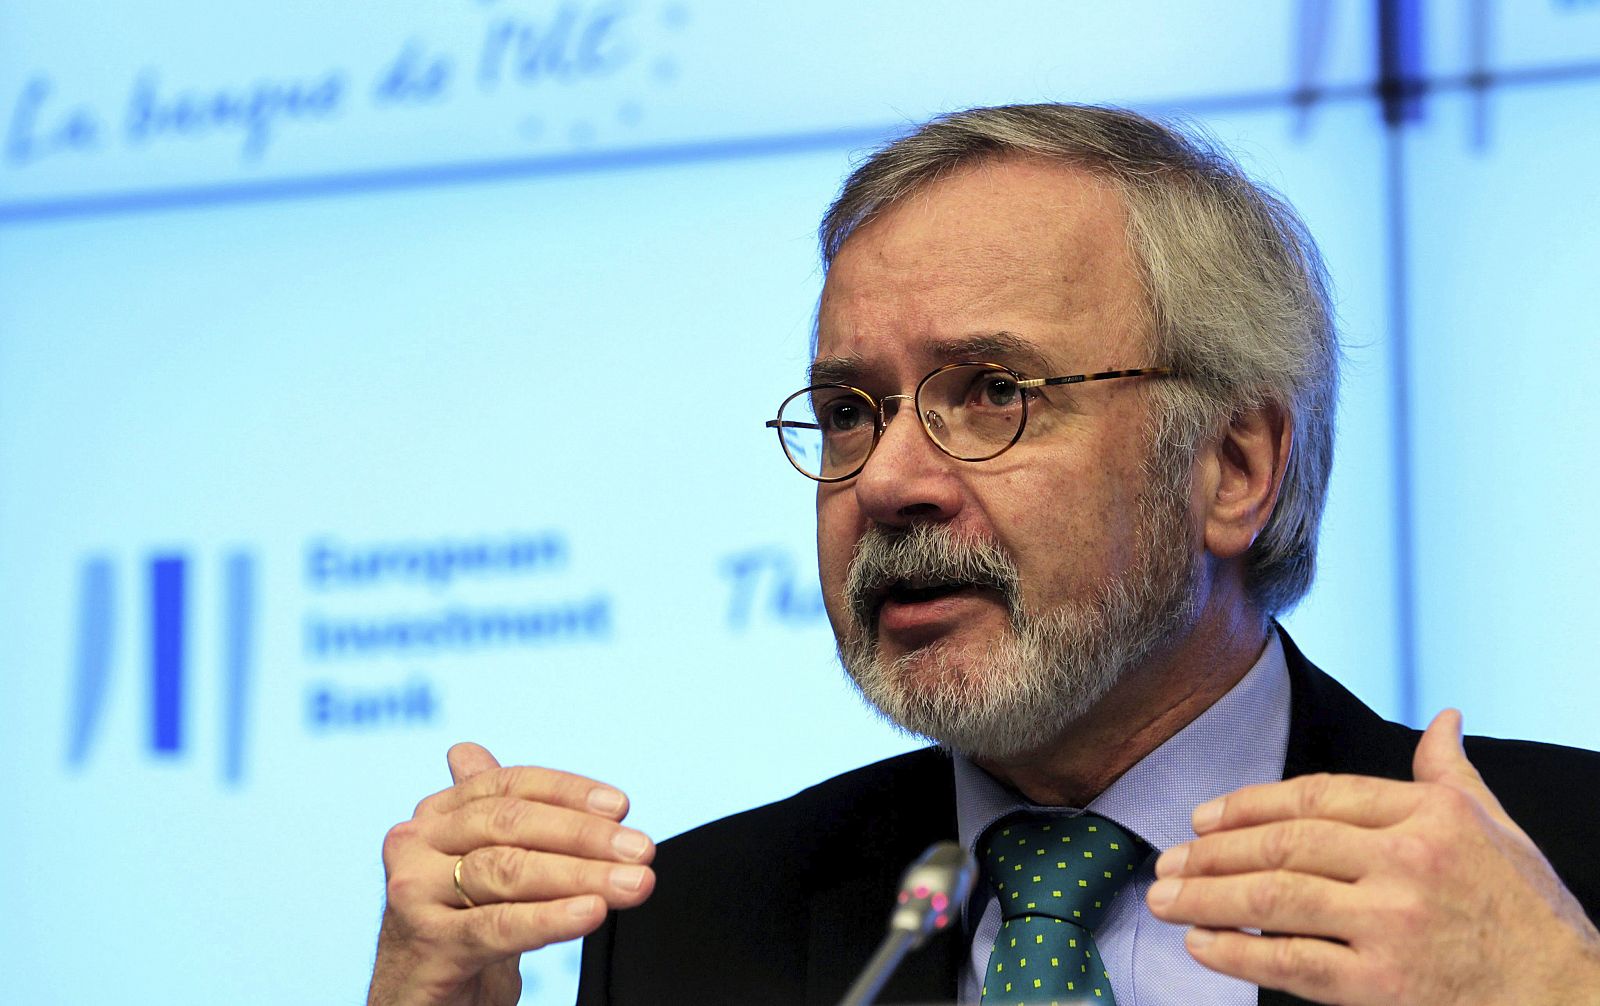 El presidente del Banco europeo de Inversiones (BEI), Werner Hoyer, presenta el balance de 2012